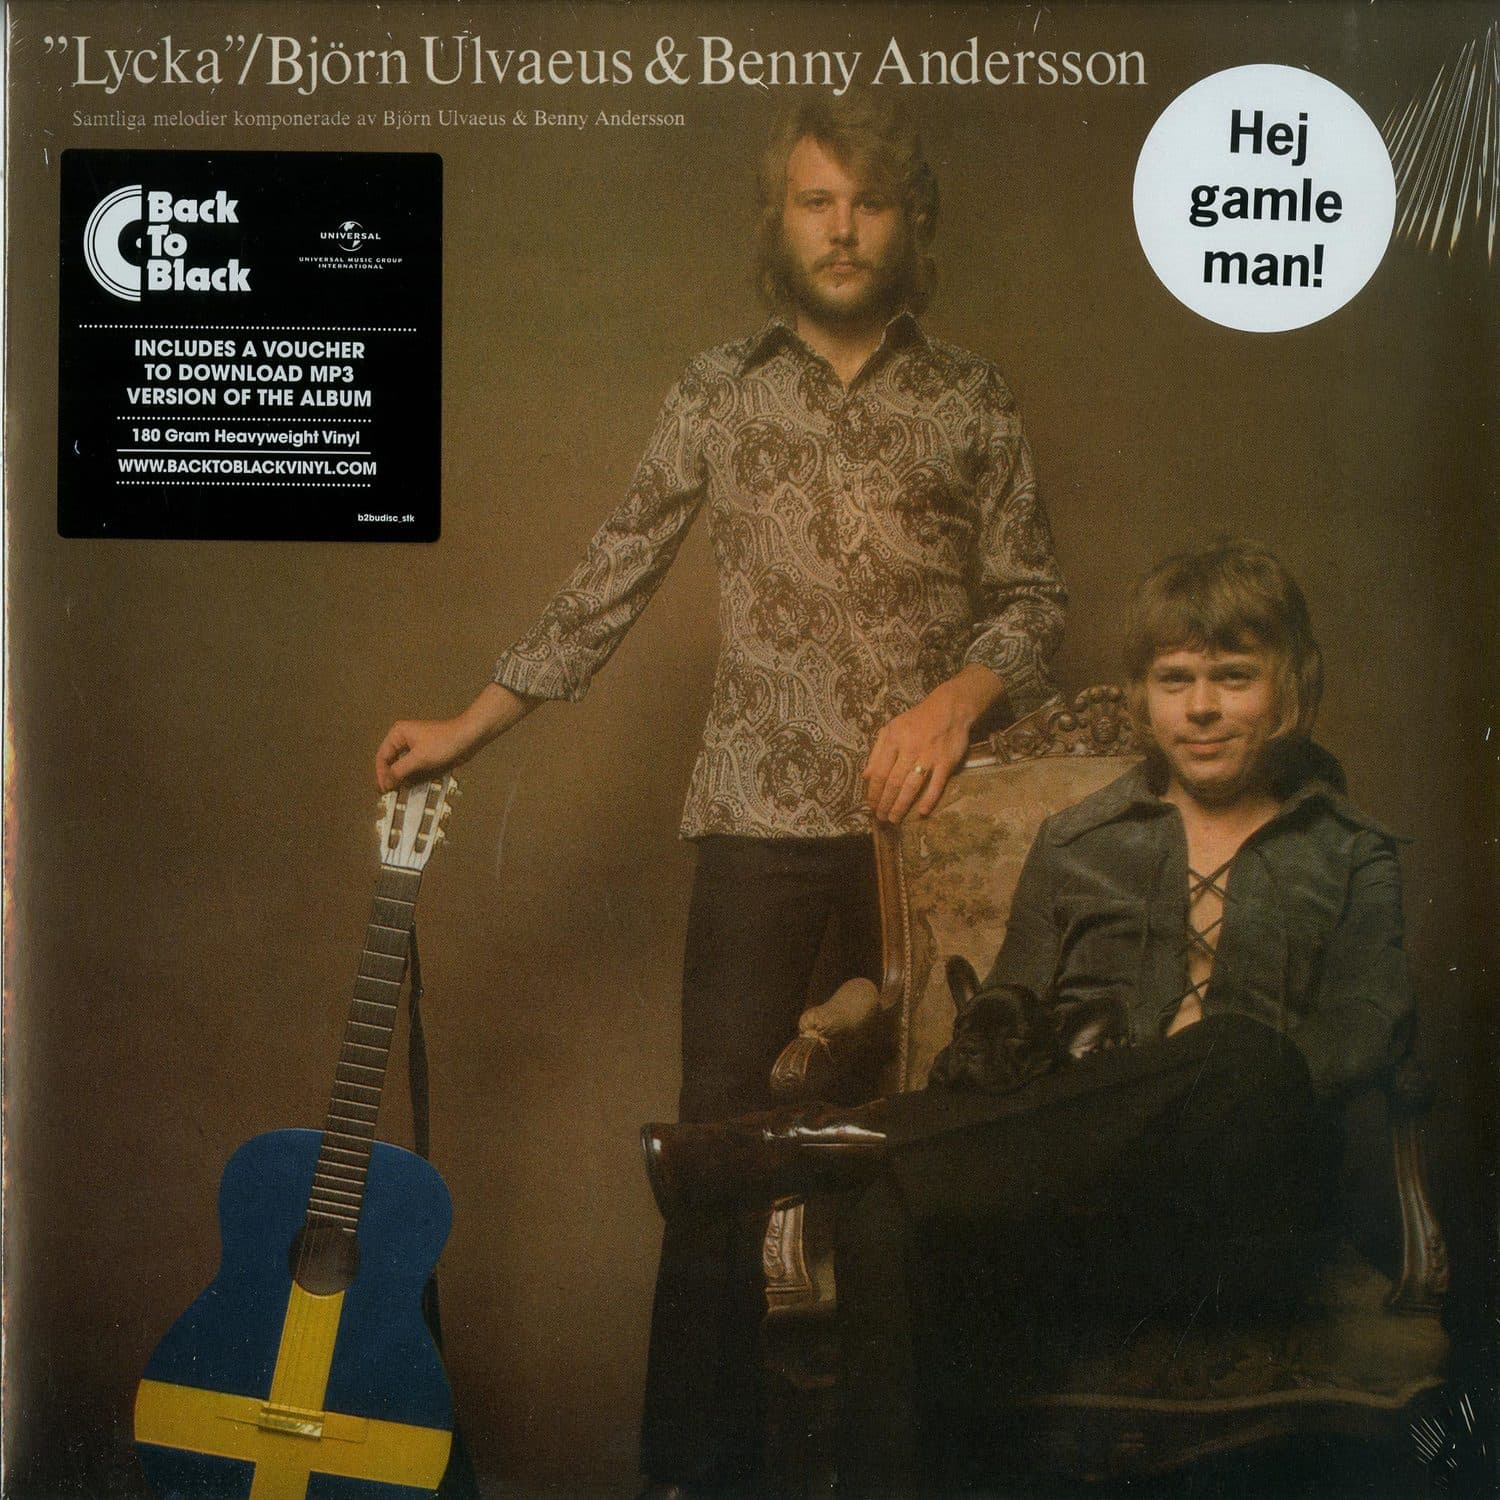 Bjorn Ulvaeus & Benny Andersson - LYCKA 